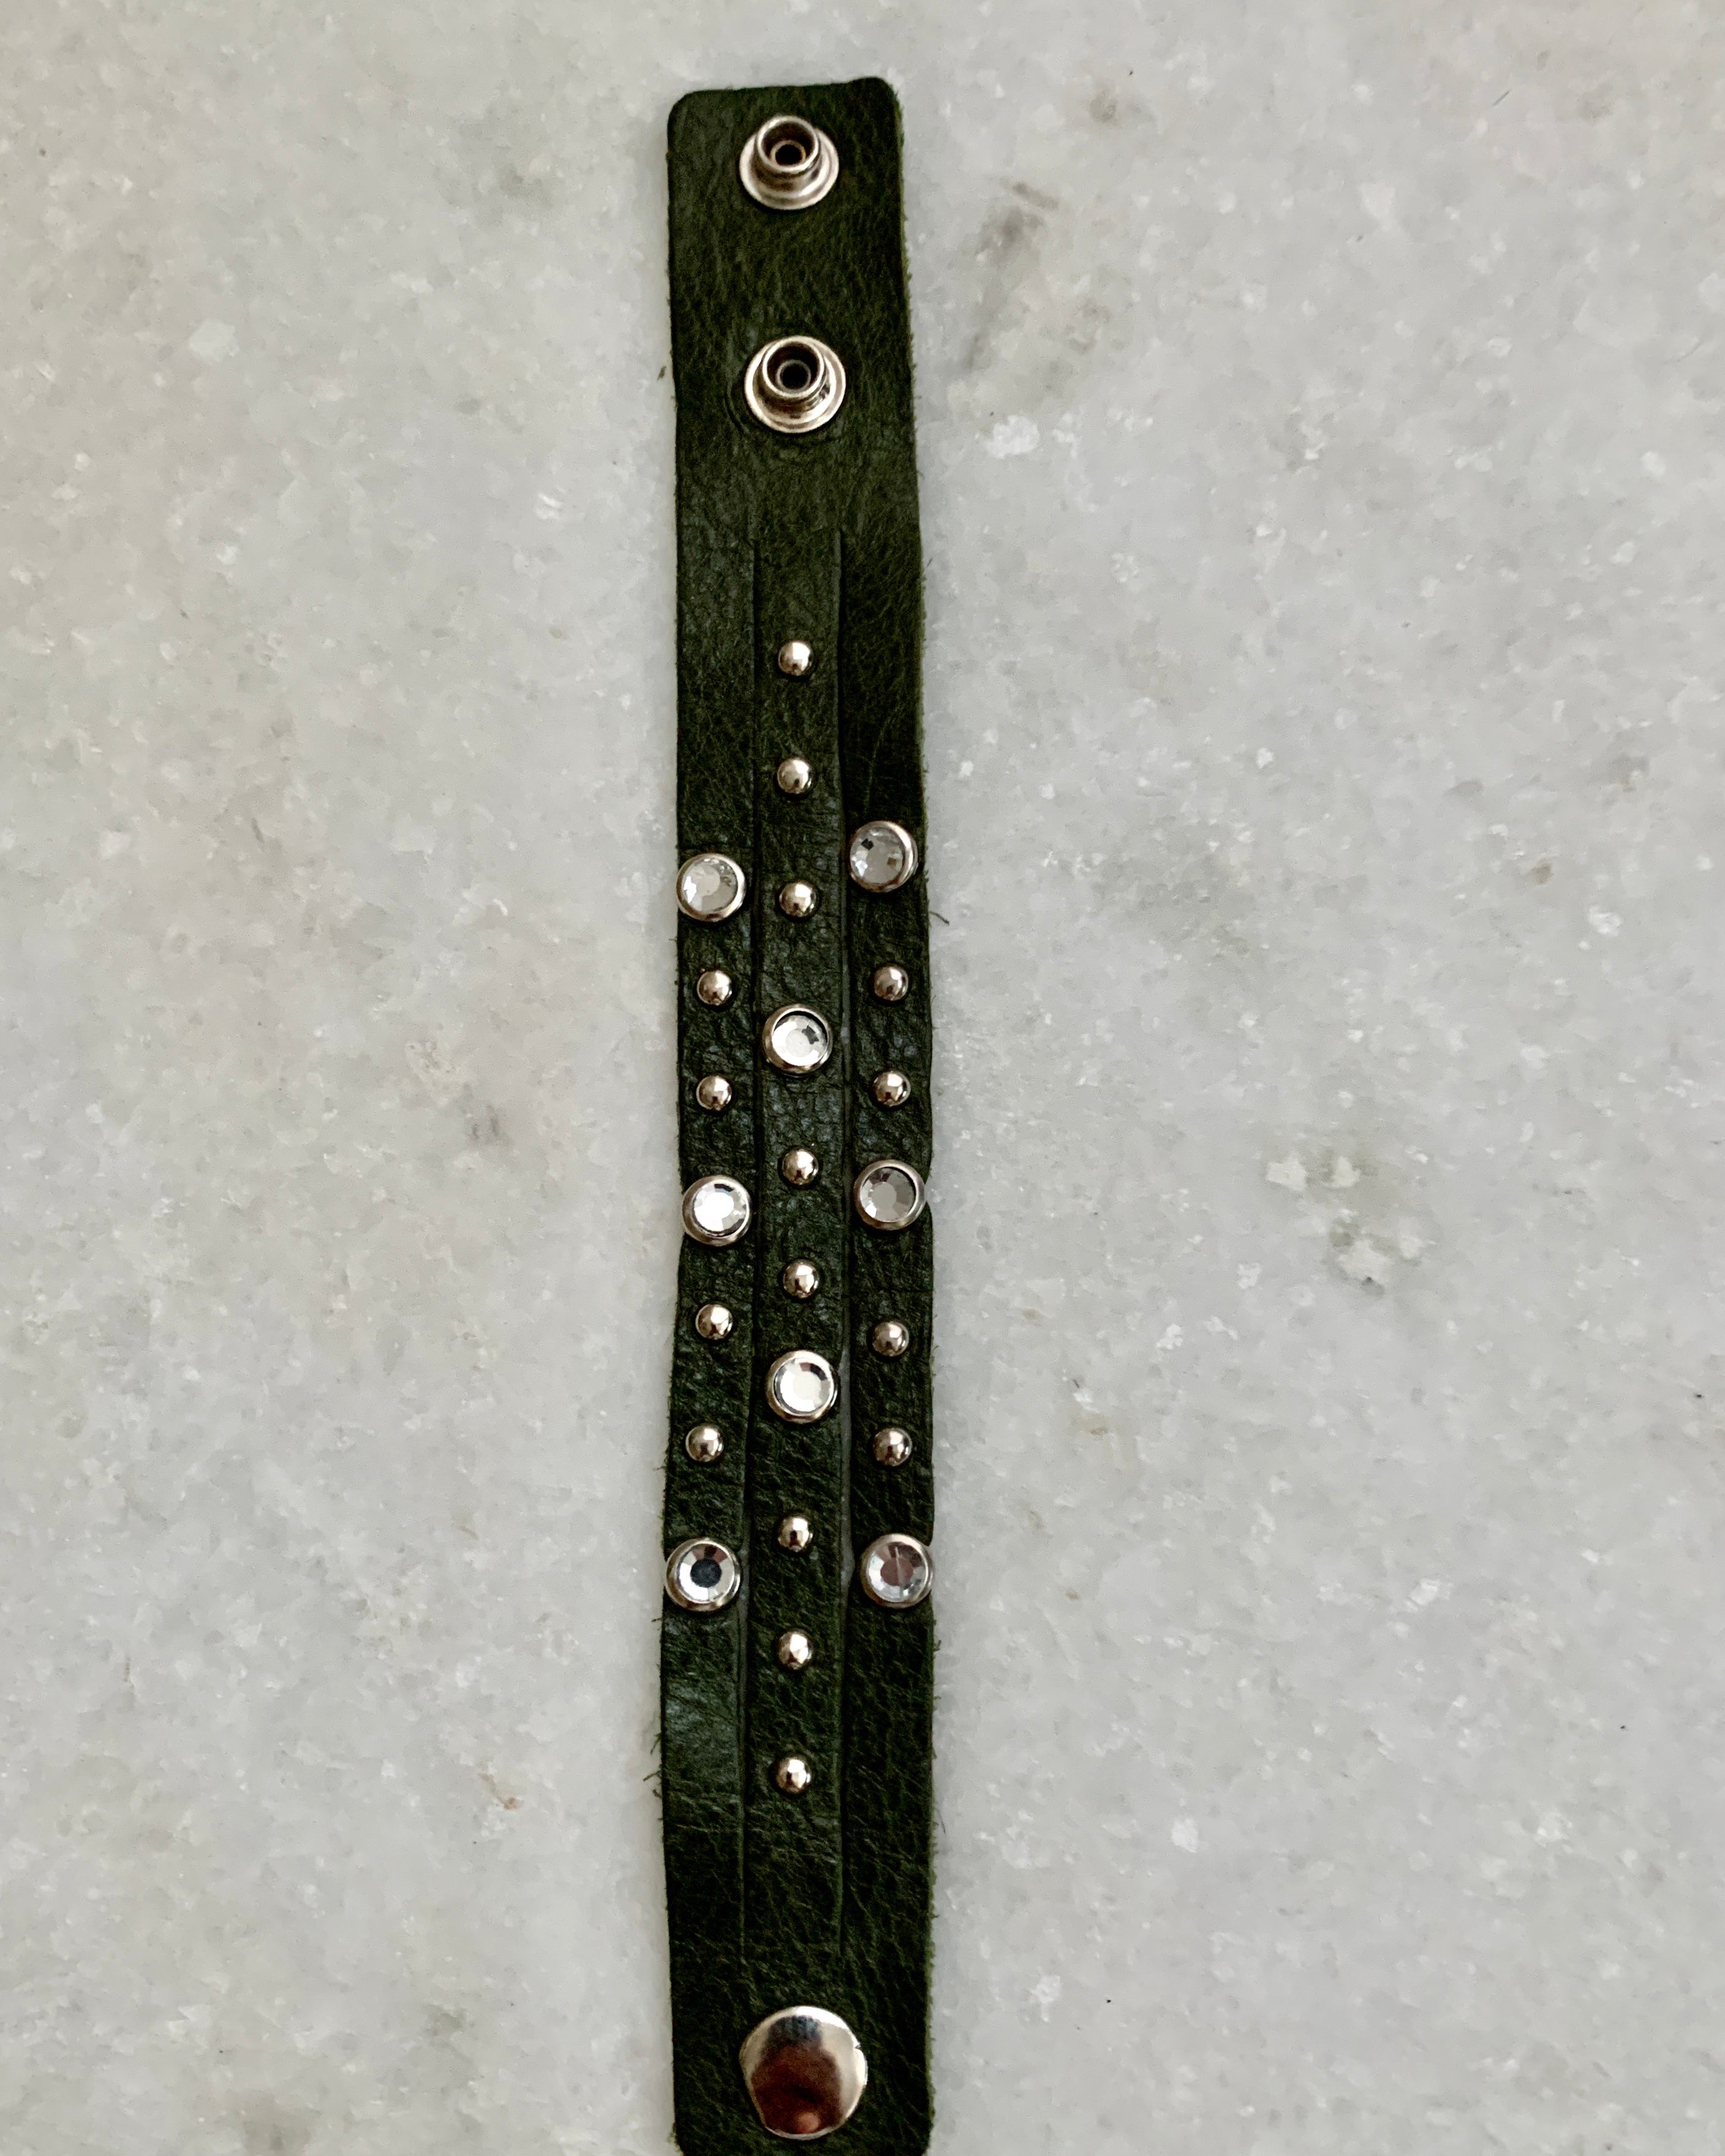 Green Cz Studded Leather Bracelet.